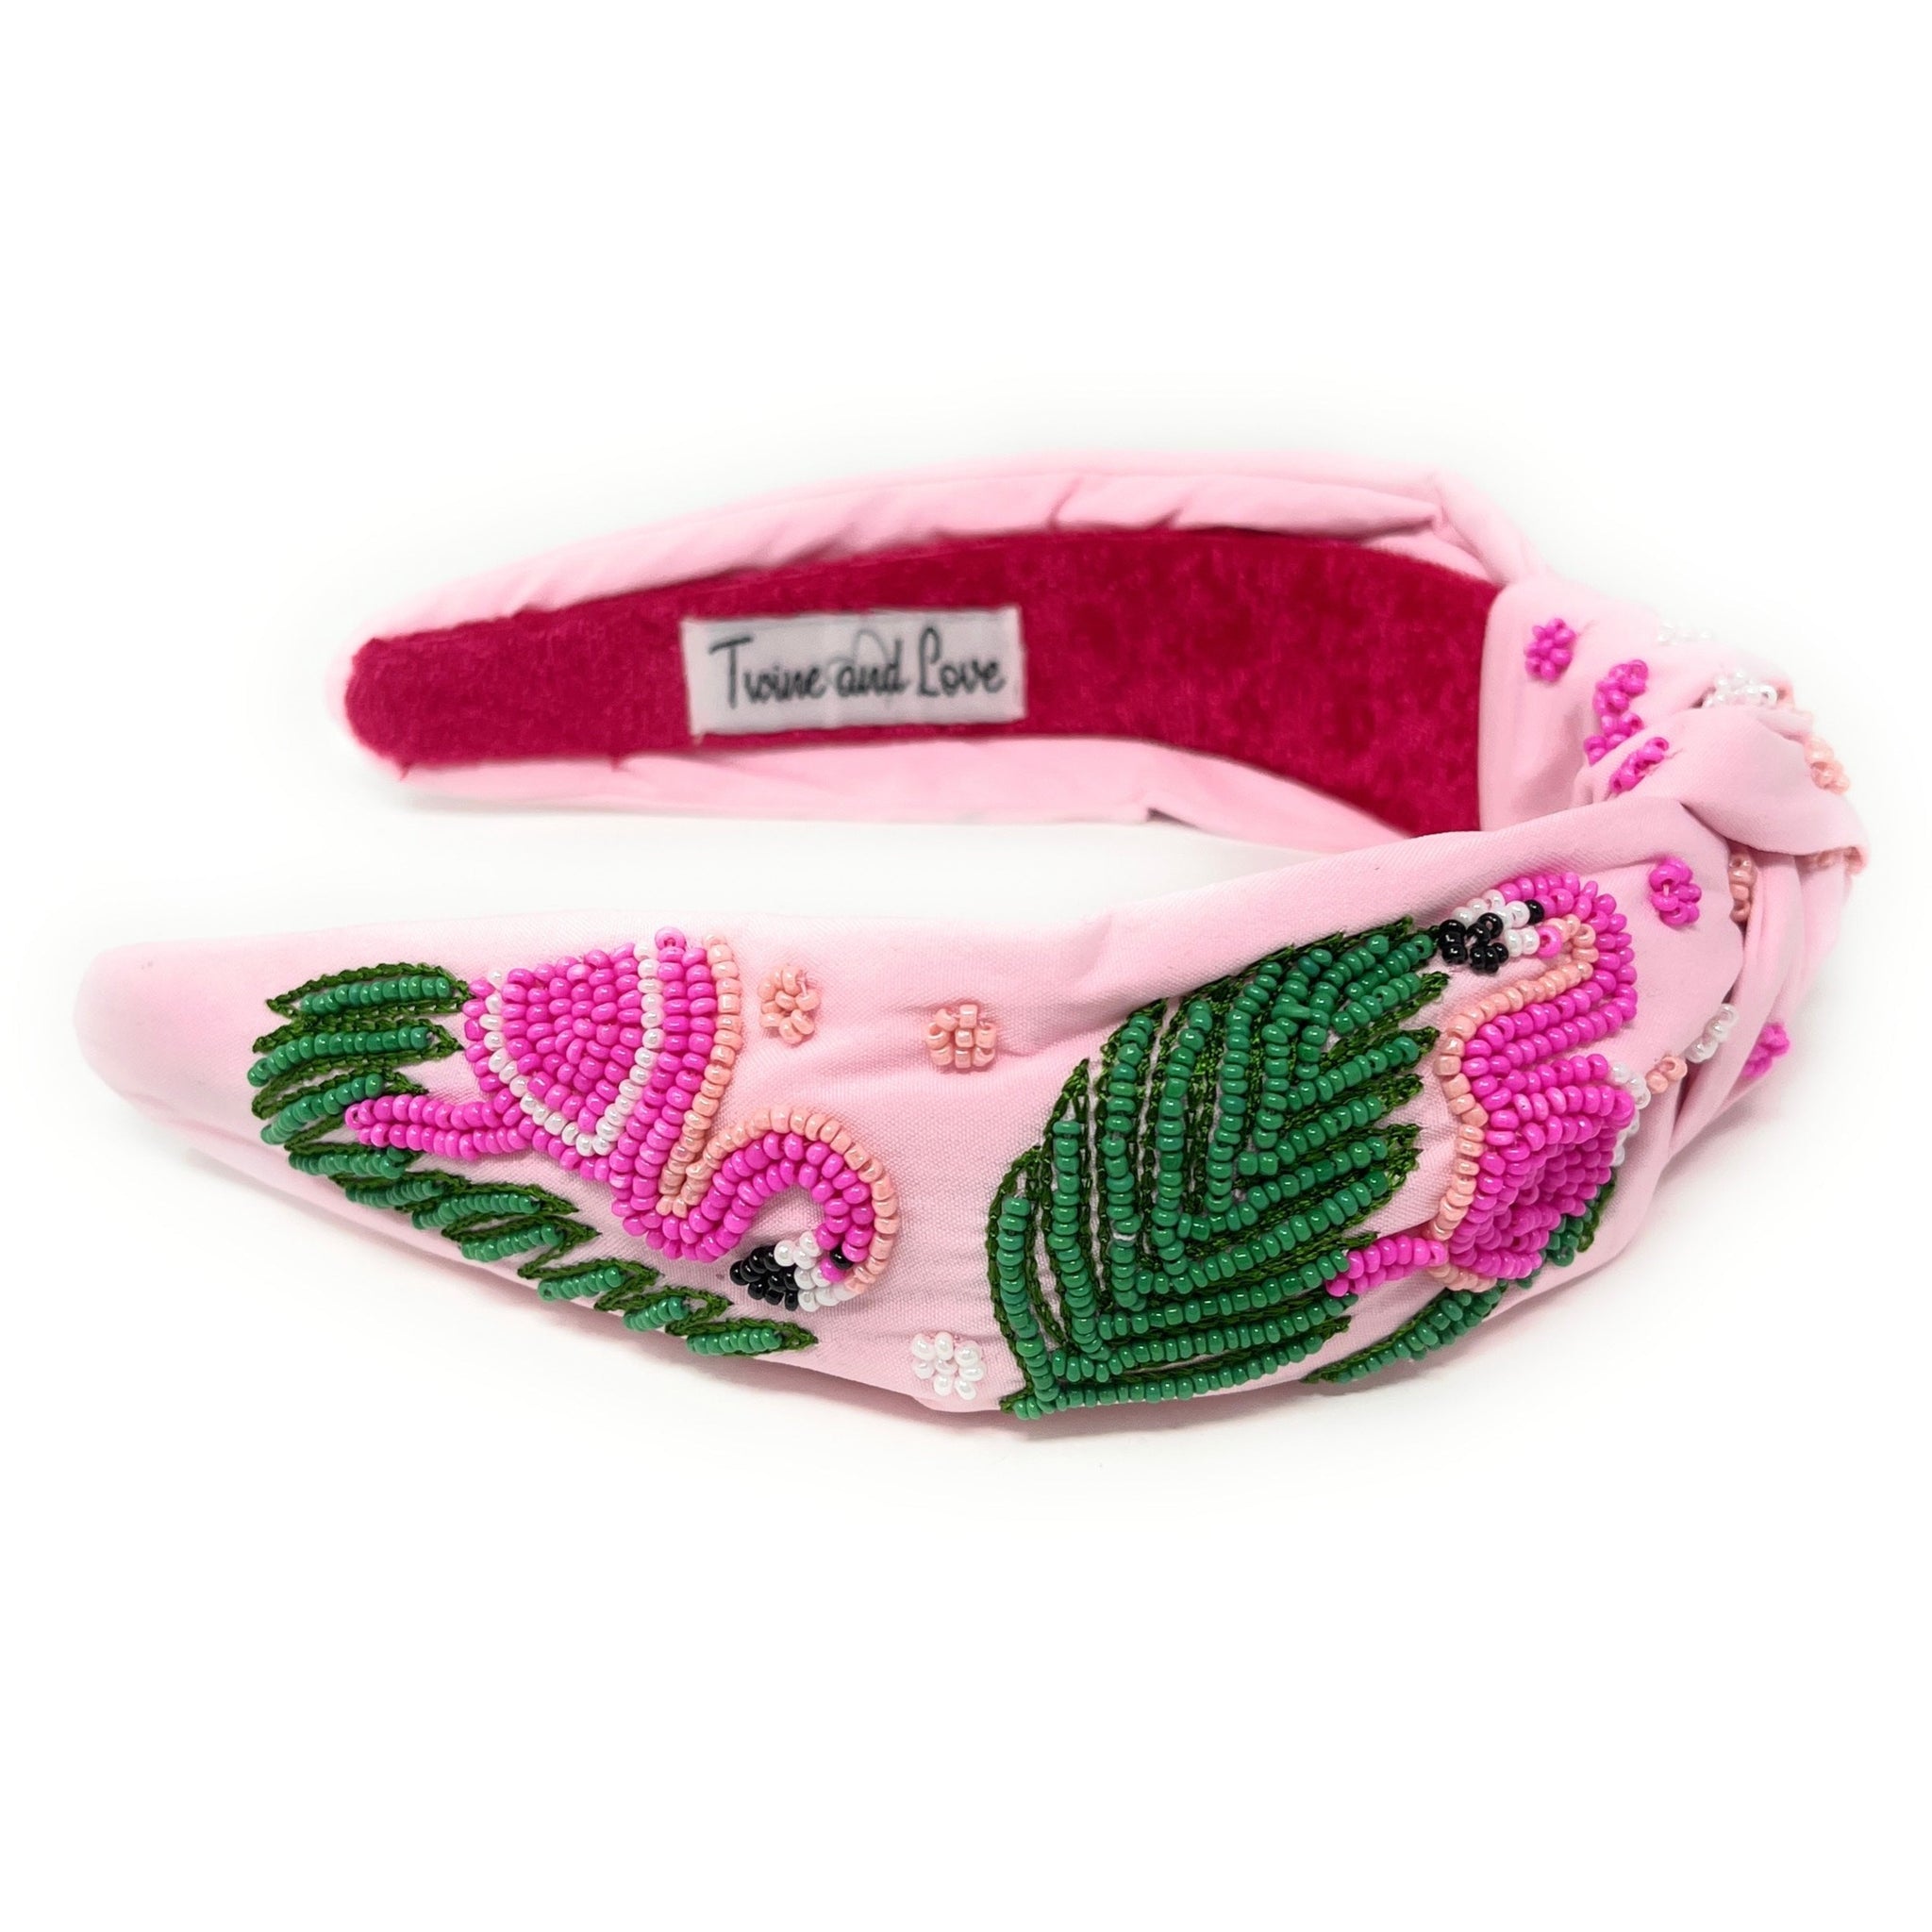 Flamingo Beaded Knot Headband, Pink Knot Headband, Handmade Headbands